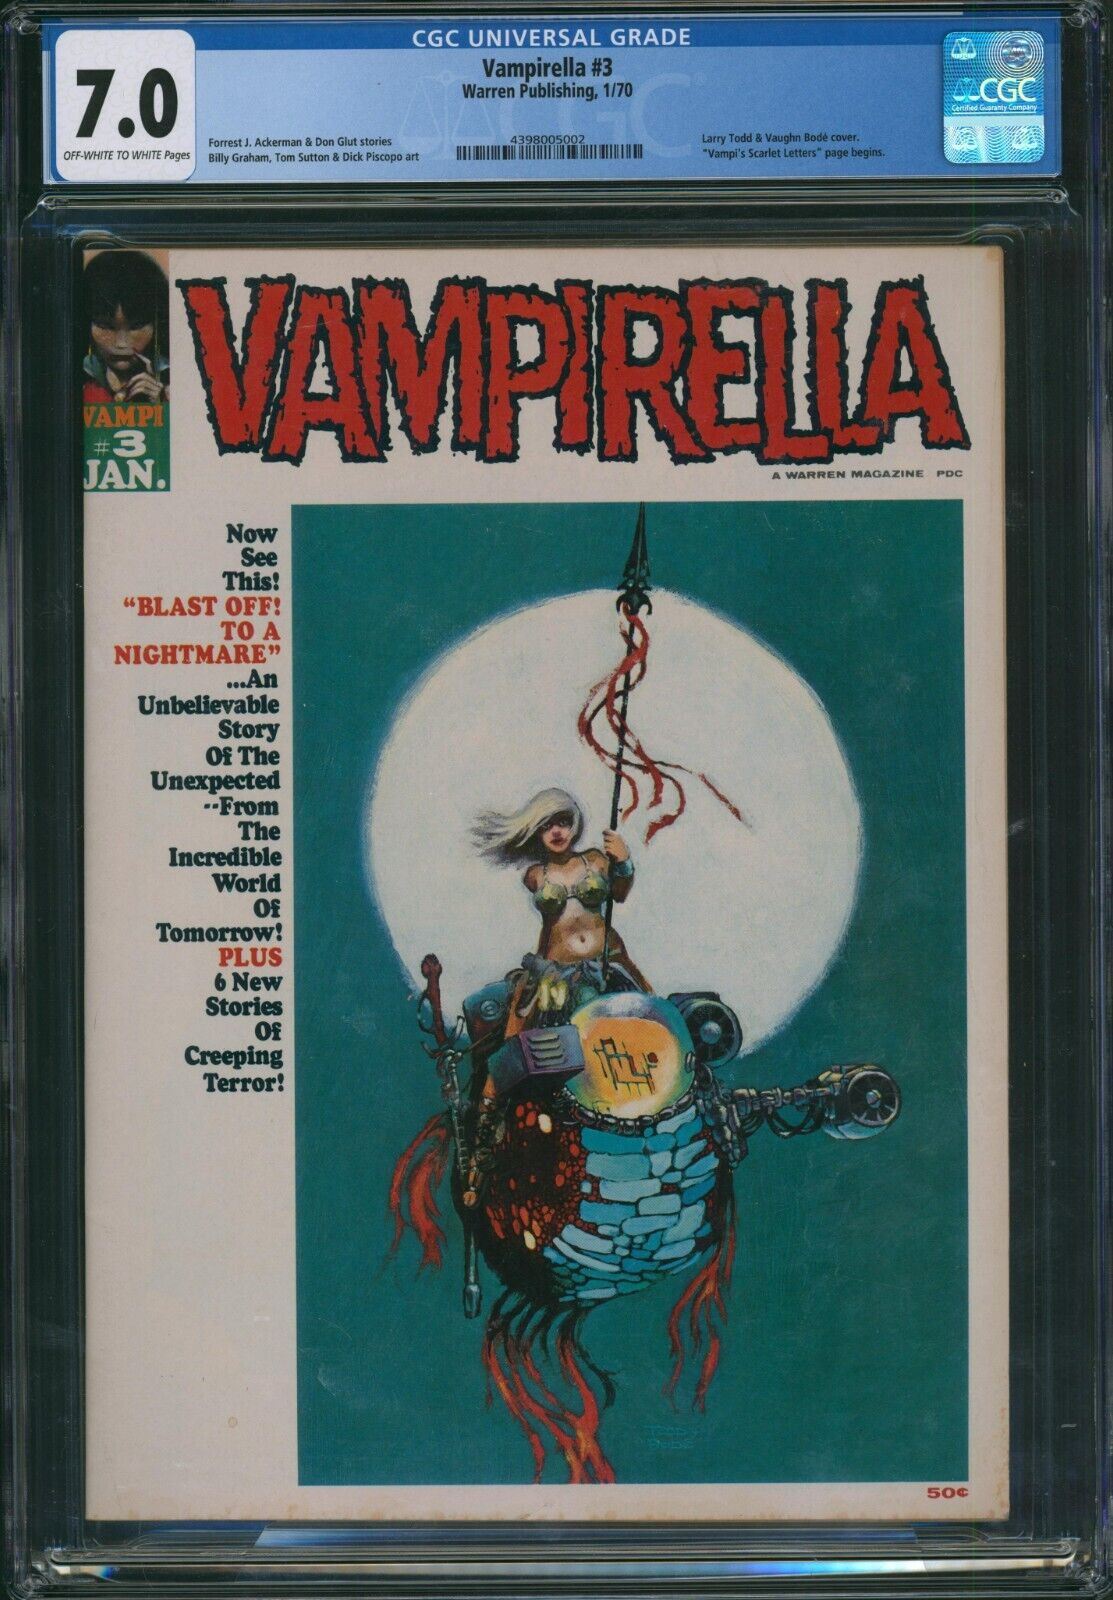 Vampirella #3 CGC 7.0 Warren Publishing 1970 Magazine